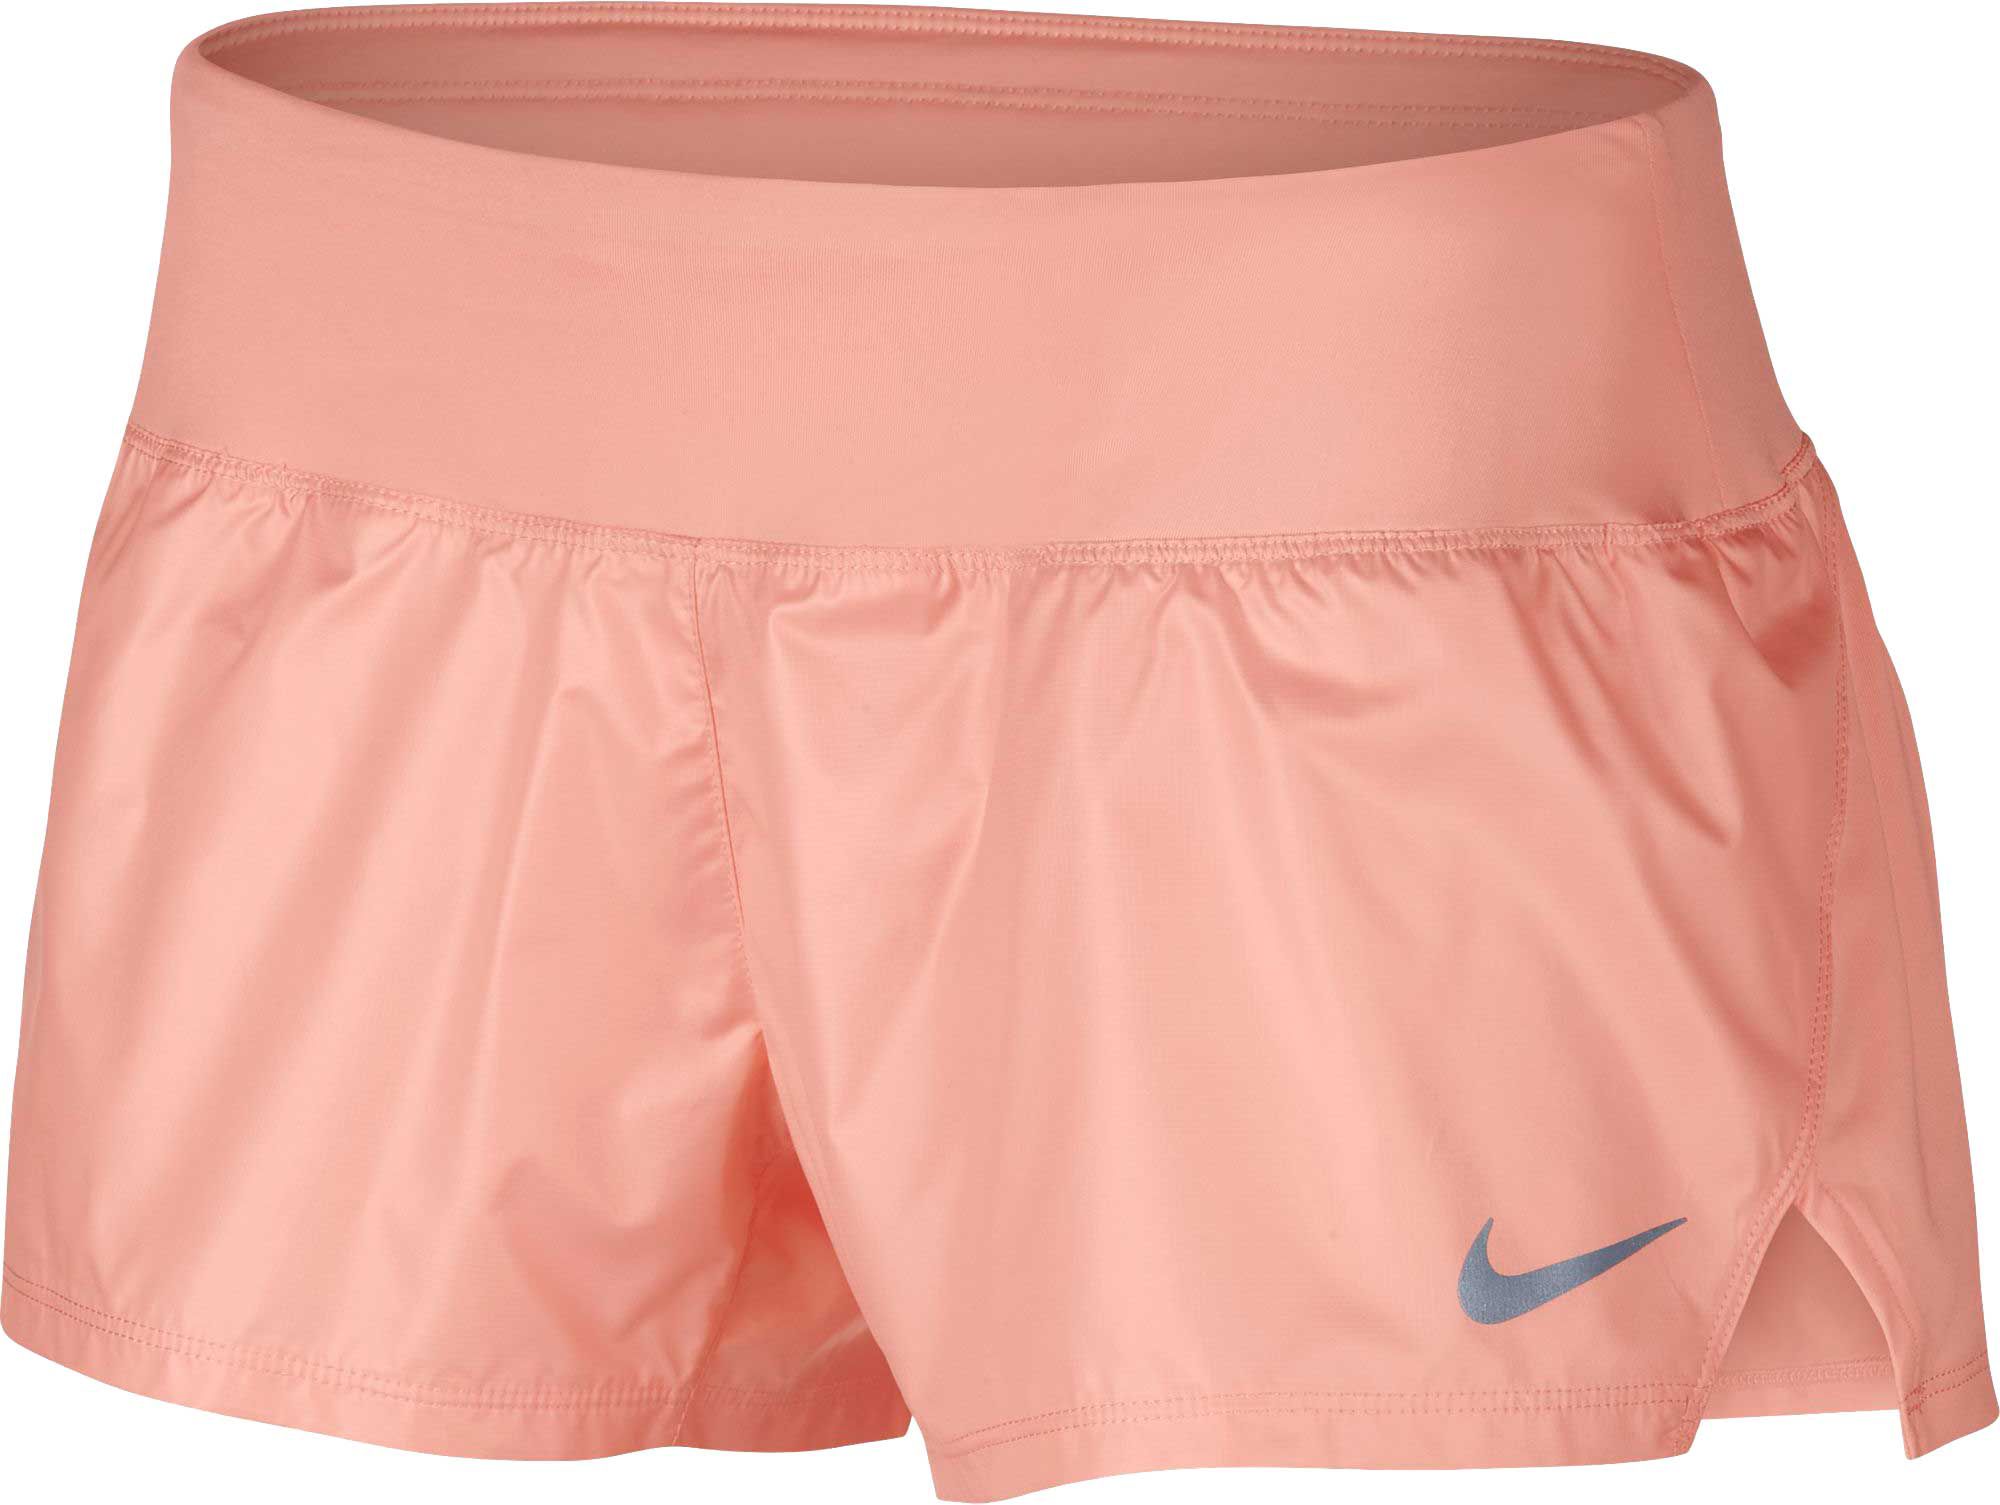 nike women's dry running shorts